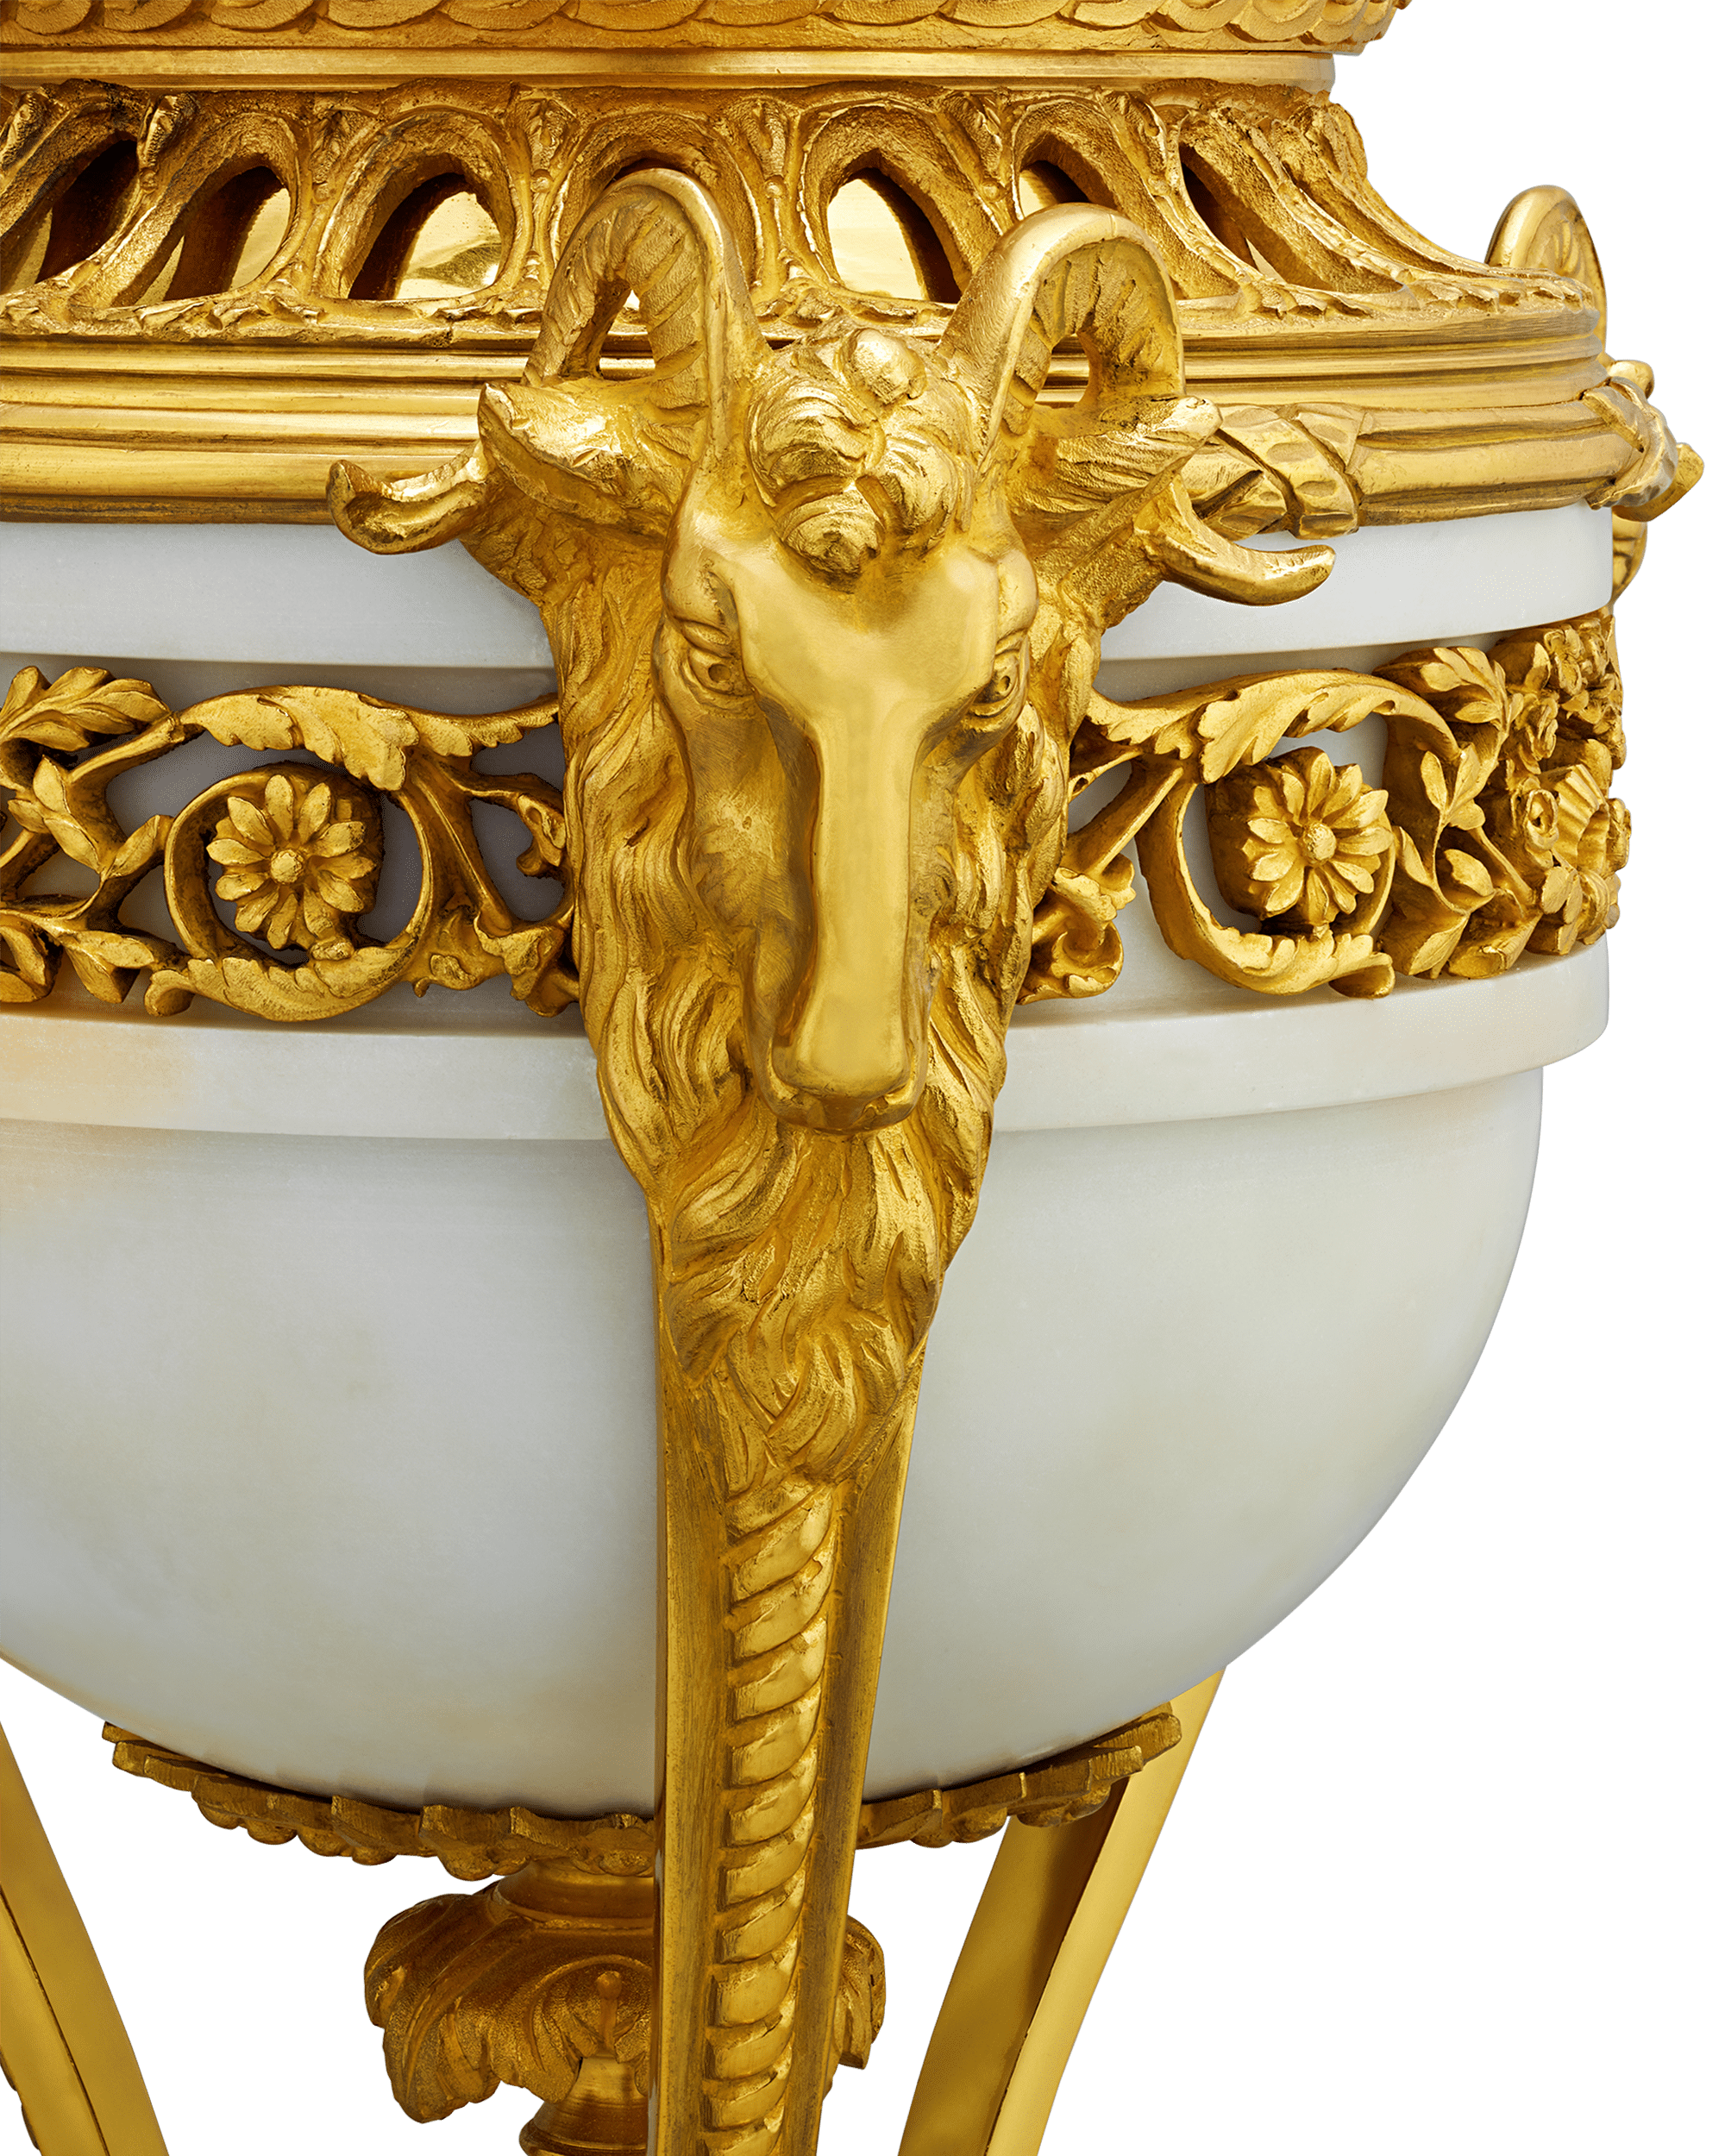 Louis XVI Style Gilt Marble Vases